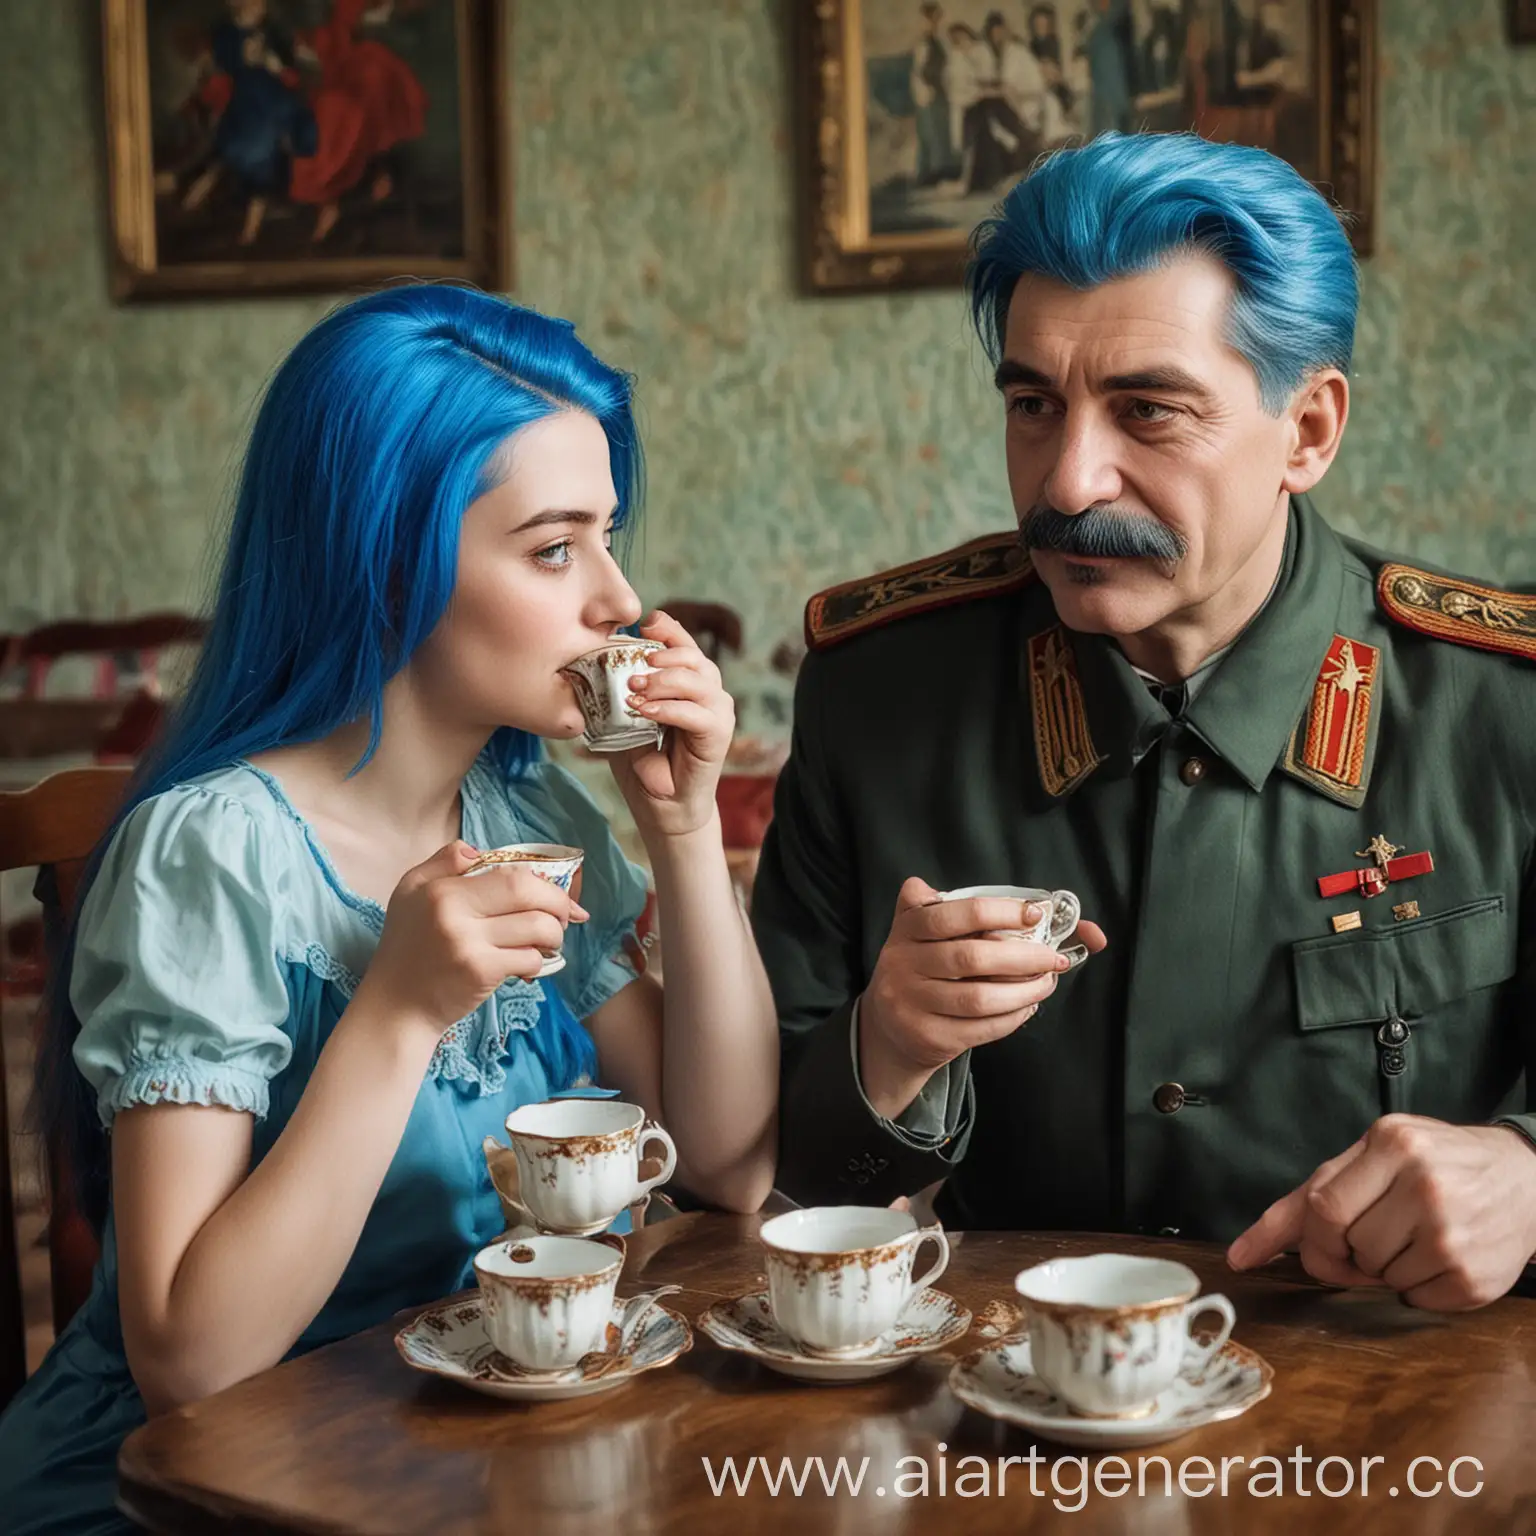 Сталин и девушка с синими волосами пьют чай